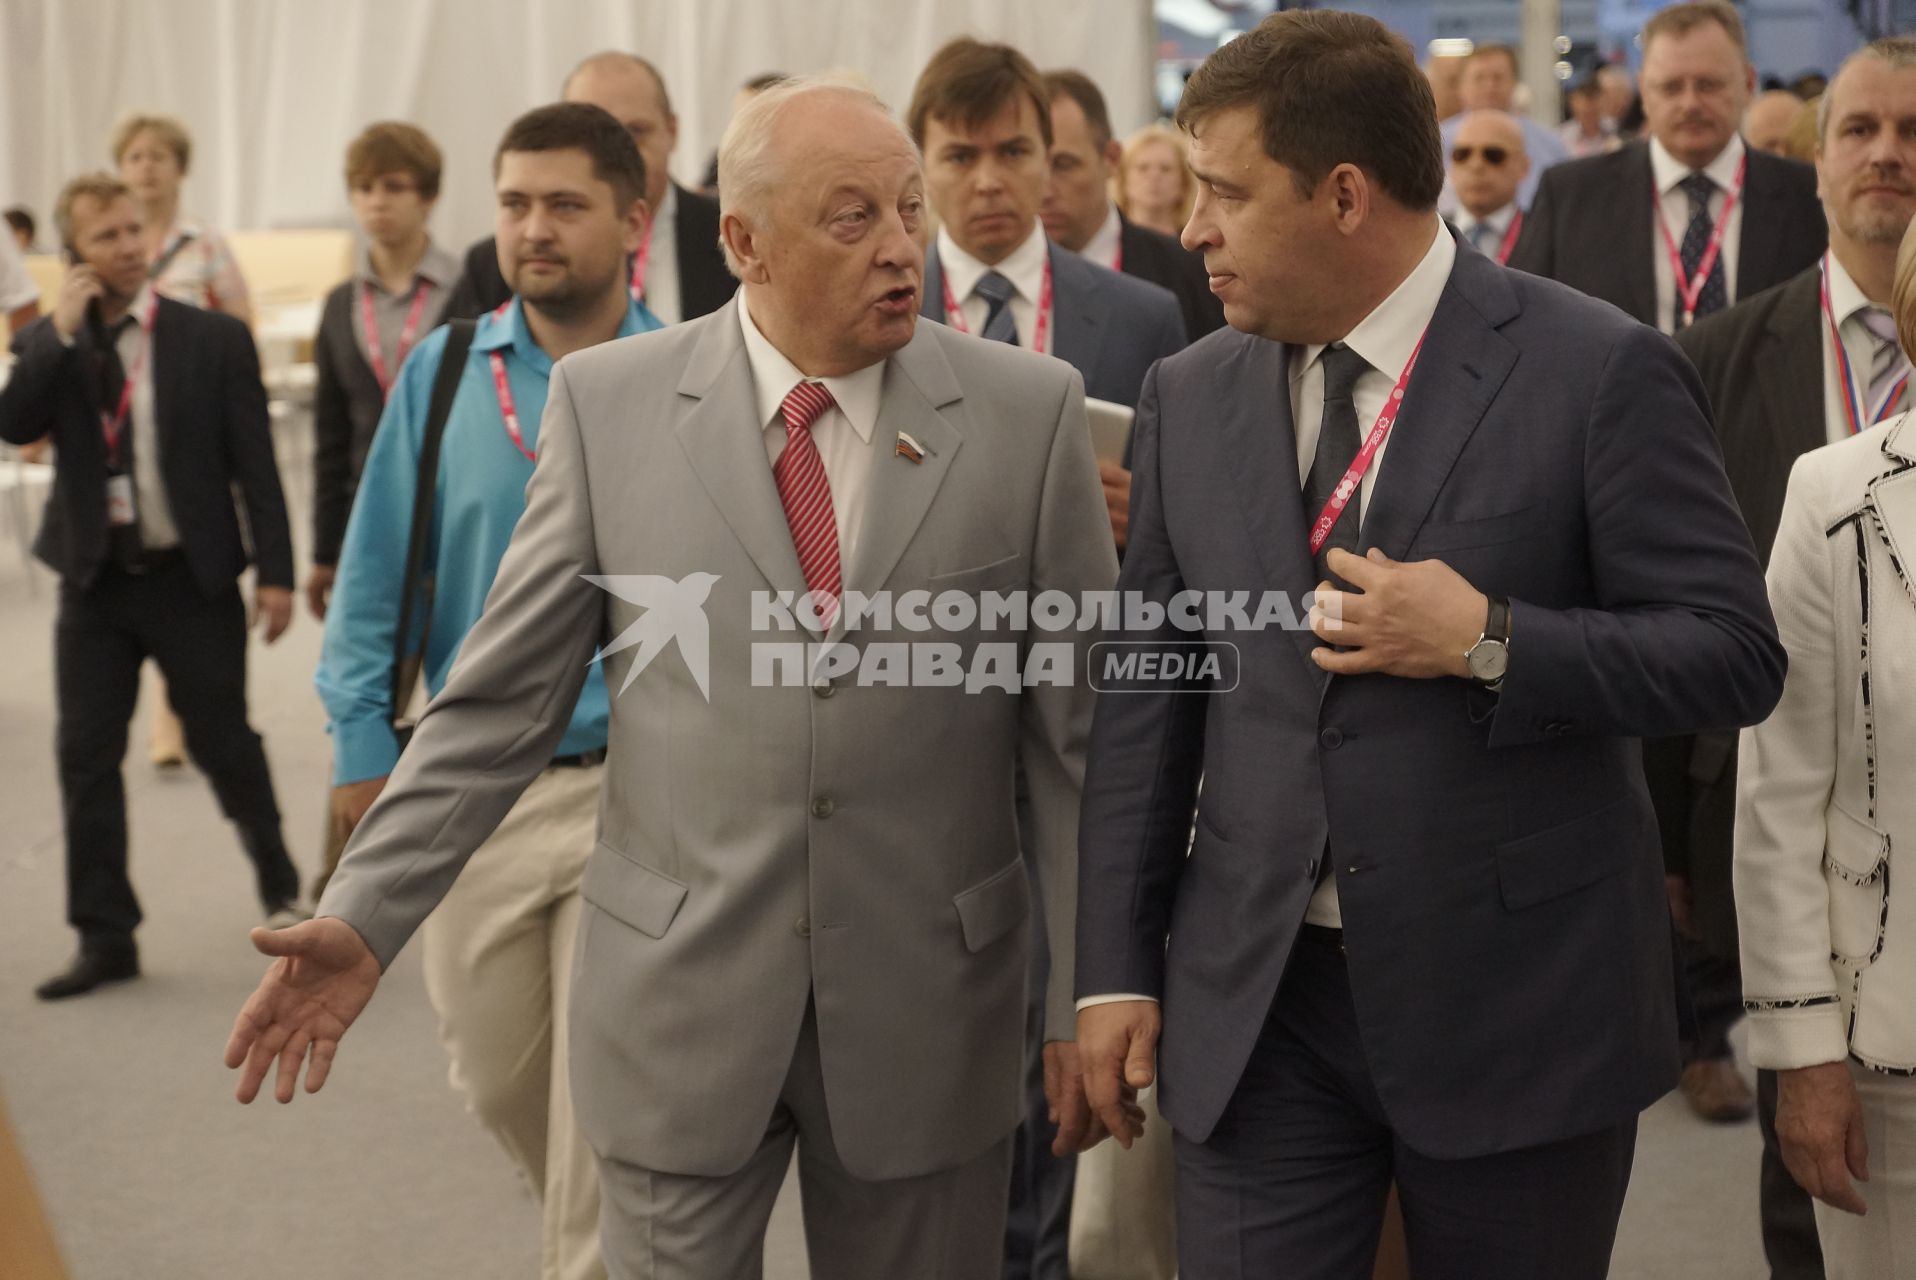 Губернатор Свердловской области Евгений Куйвашев (Справа) и бывший губернатор СО Эдуард Россель (слева) на открытии выставки Иннопром в Екатеринбурге